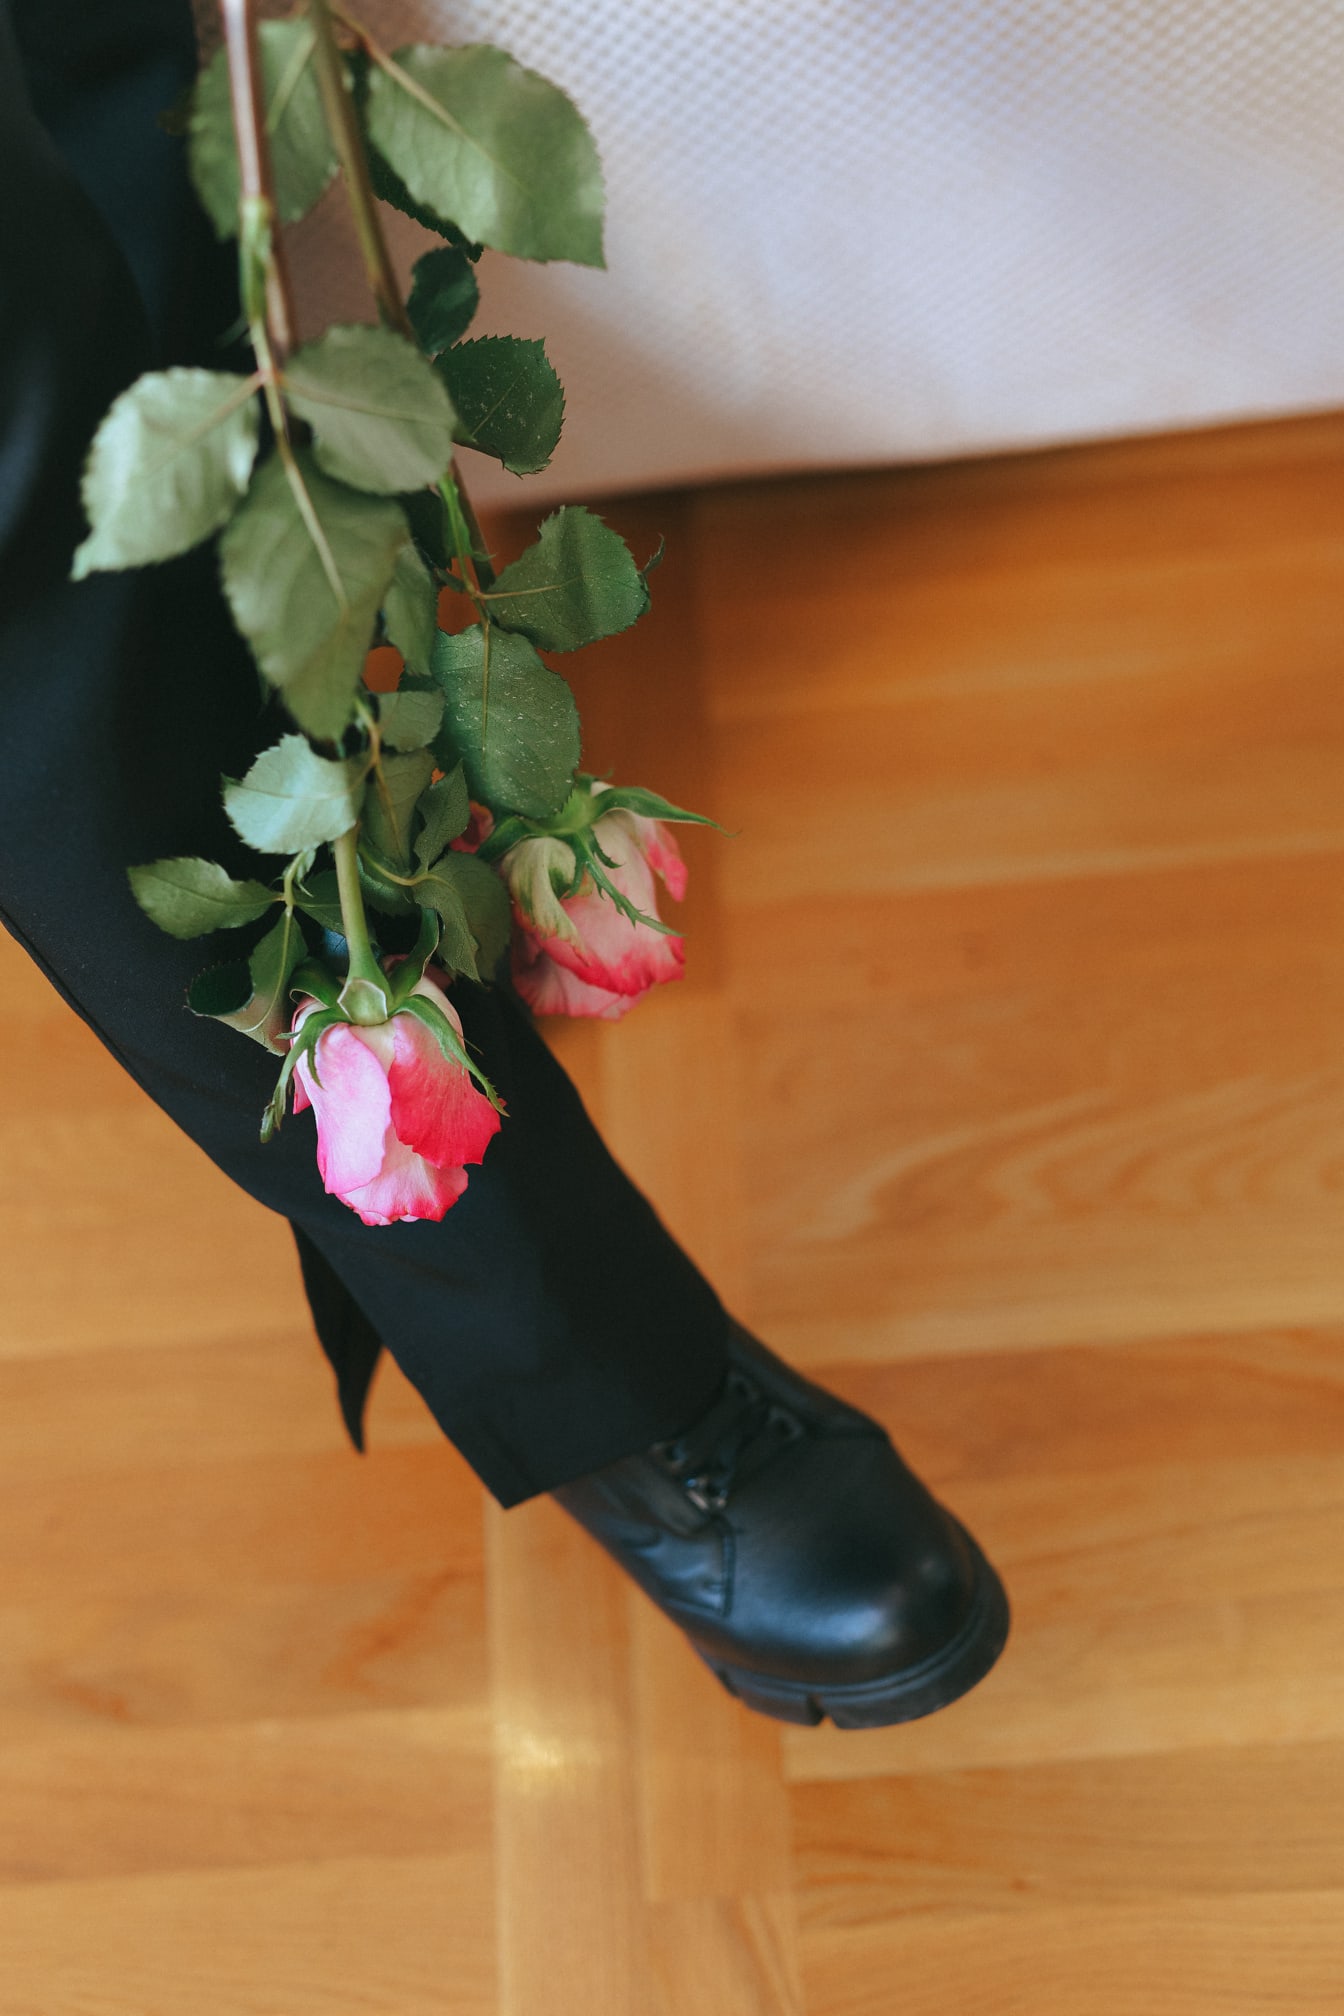 ピンクがかったバラの花束を持つ人の足